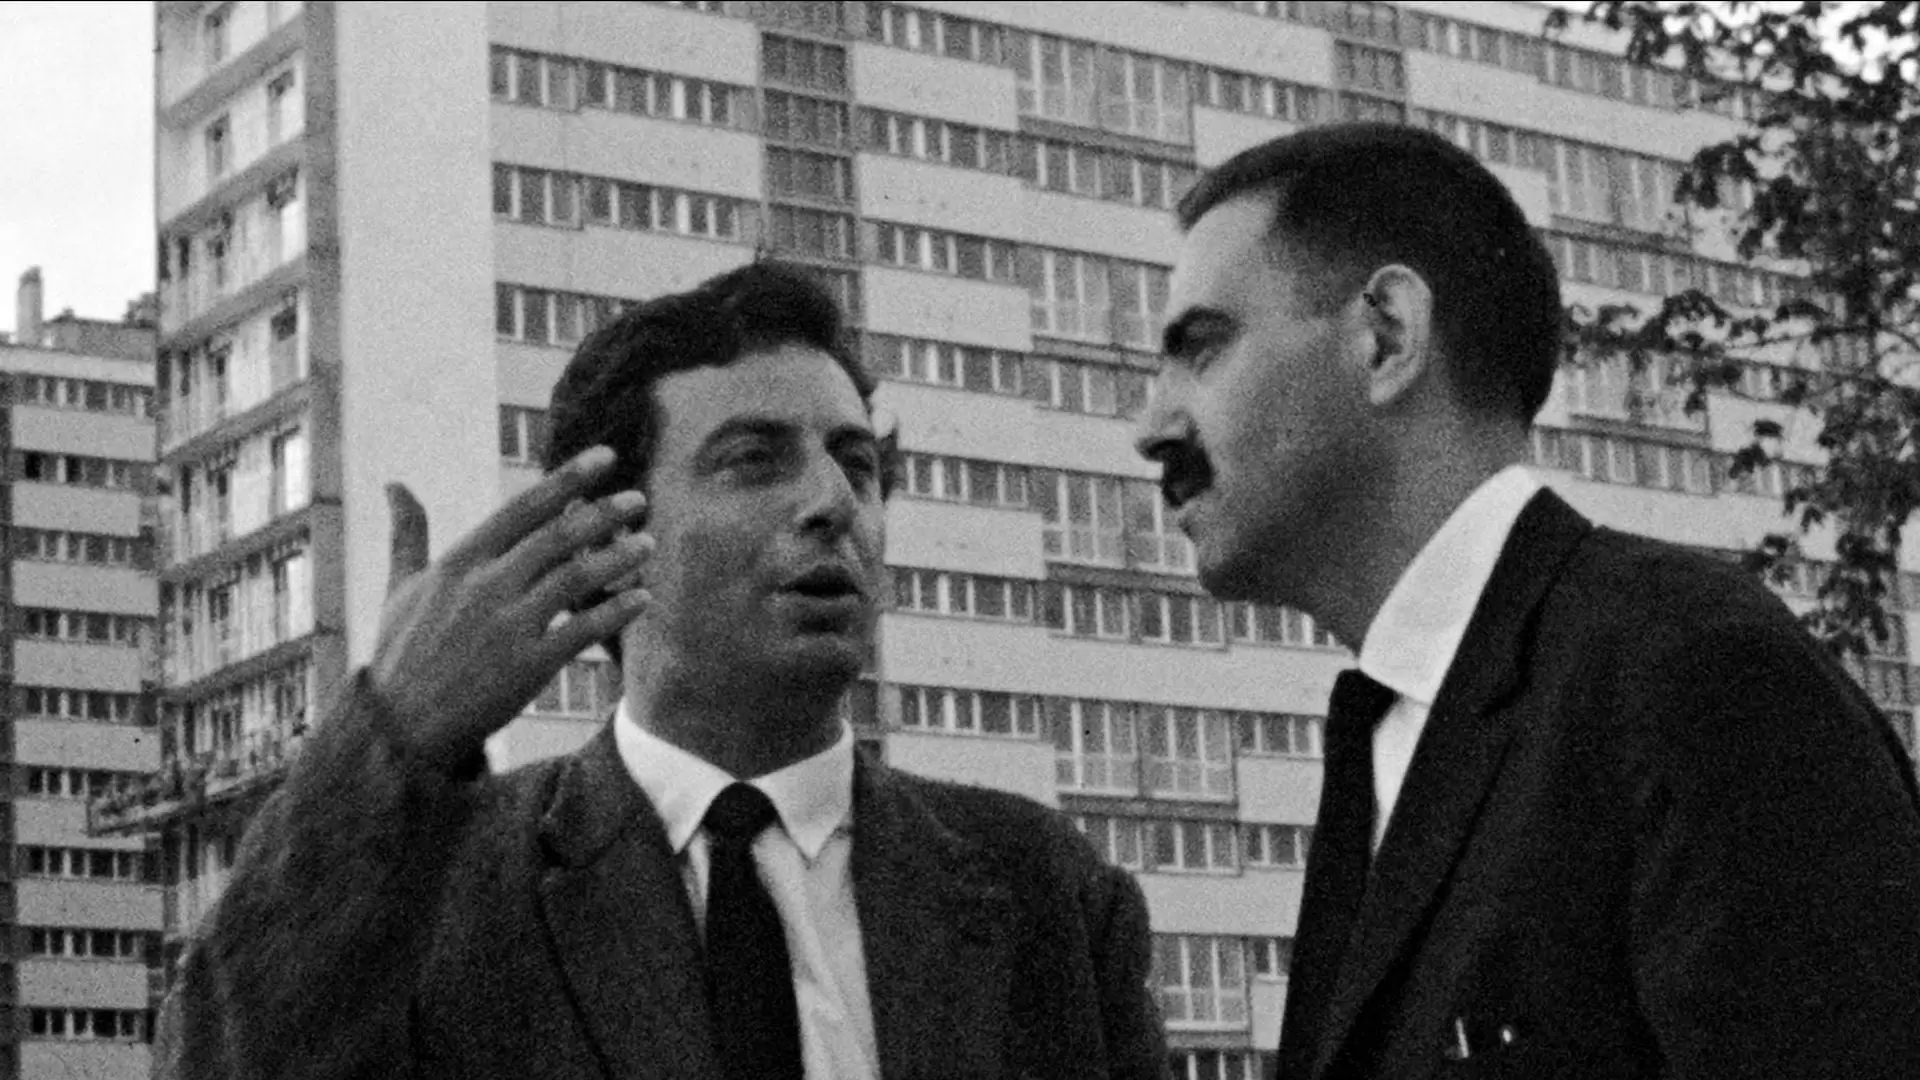 دانلود مستند Le joli mai 1963 (ماه مِه دوست داشتنی) با زیرنویس فارسی و تماشای آنلاین